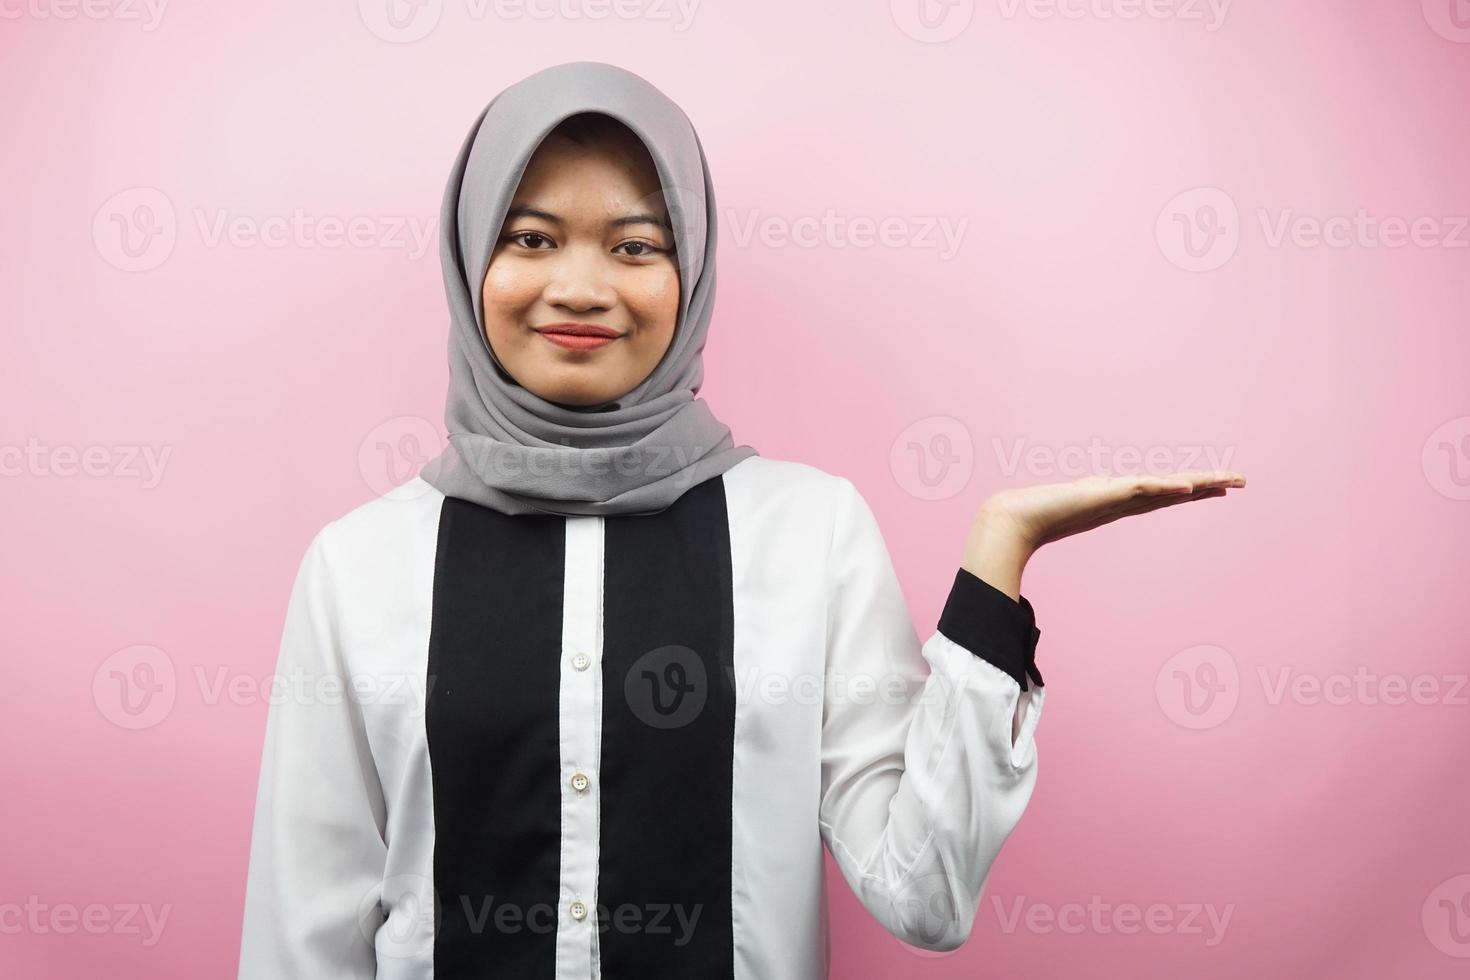 belle jeune femme musulmane asiatique avec les mains montrant et présentant quelque chose dans la direction de l'espace vide, souriant avec confiance, avec enthousiasme, face à la caméra, isolée sur fond rose photo